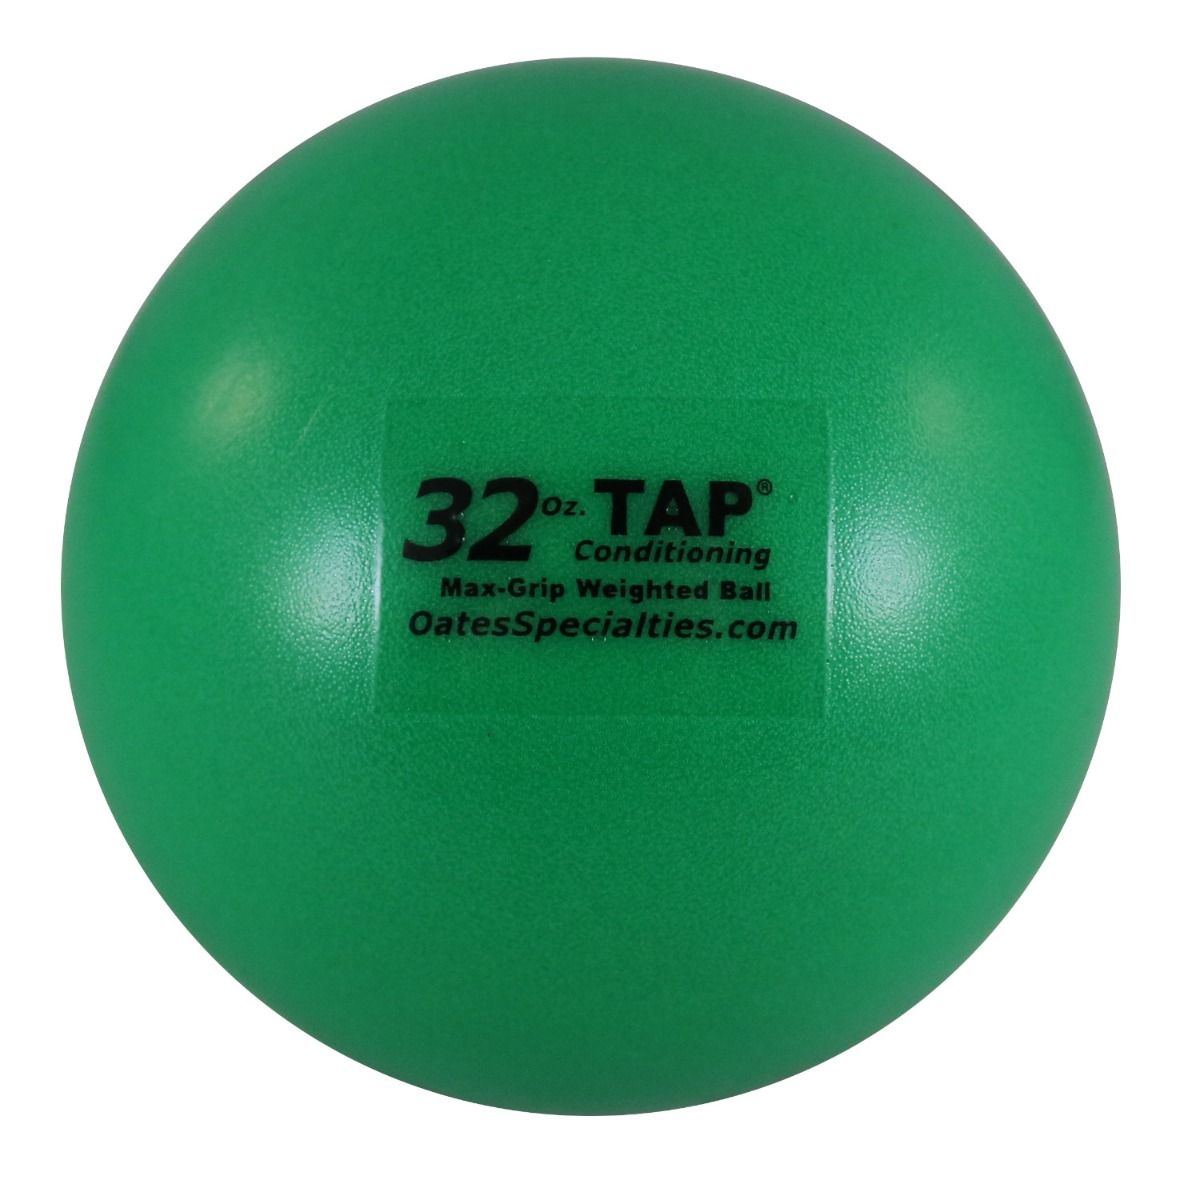 TAP™ Mini-Medicine Ball